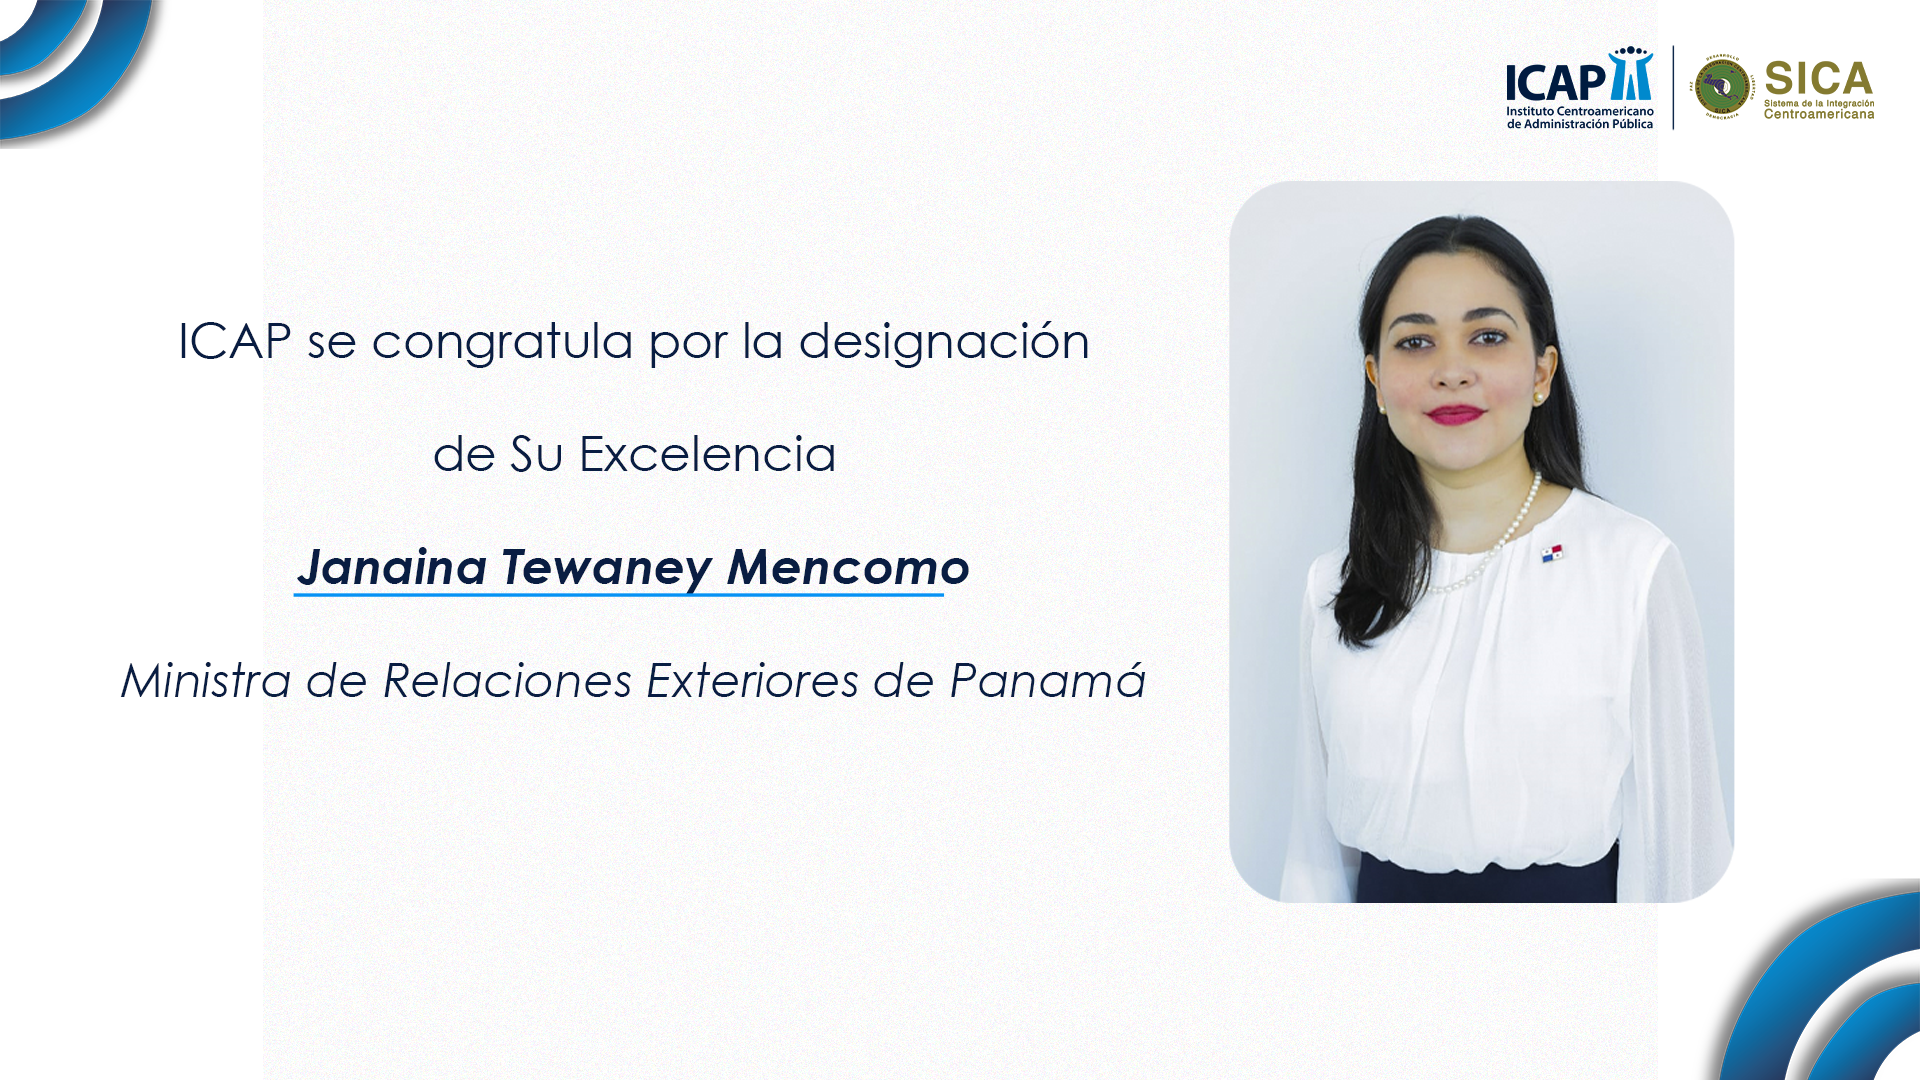 ICAP se congratula por la designación de la nueva Ministra de Relaciones Exteriores de Panamá